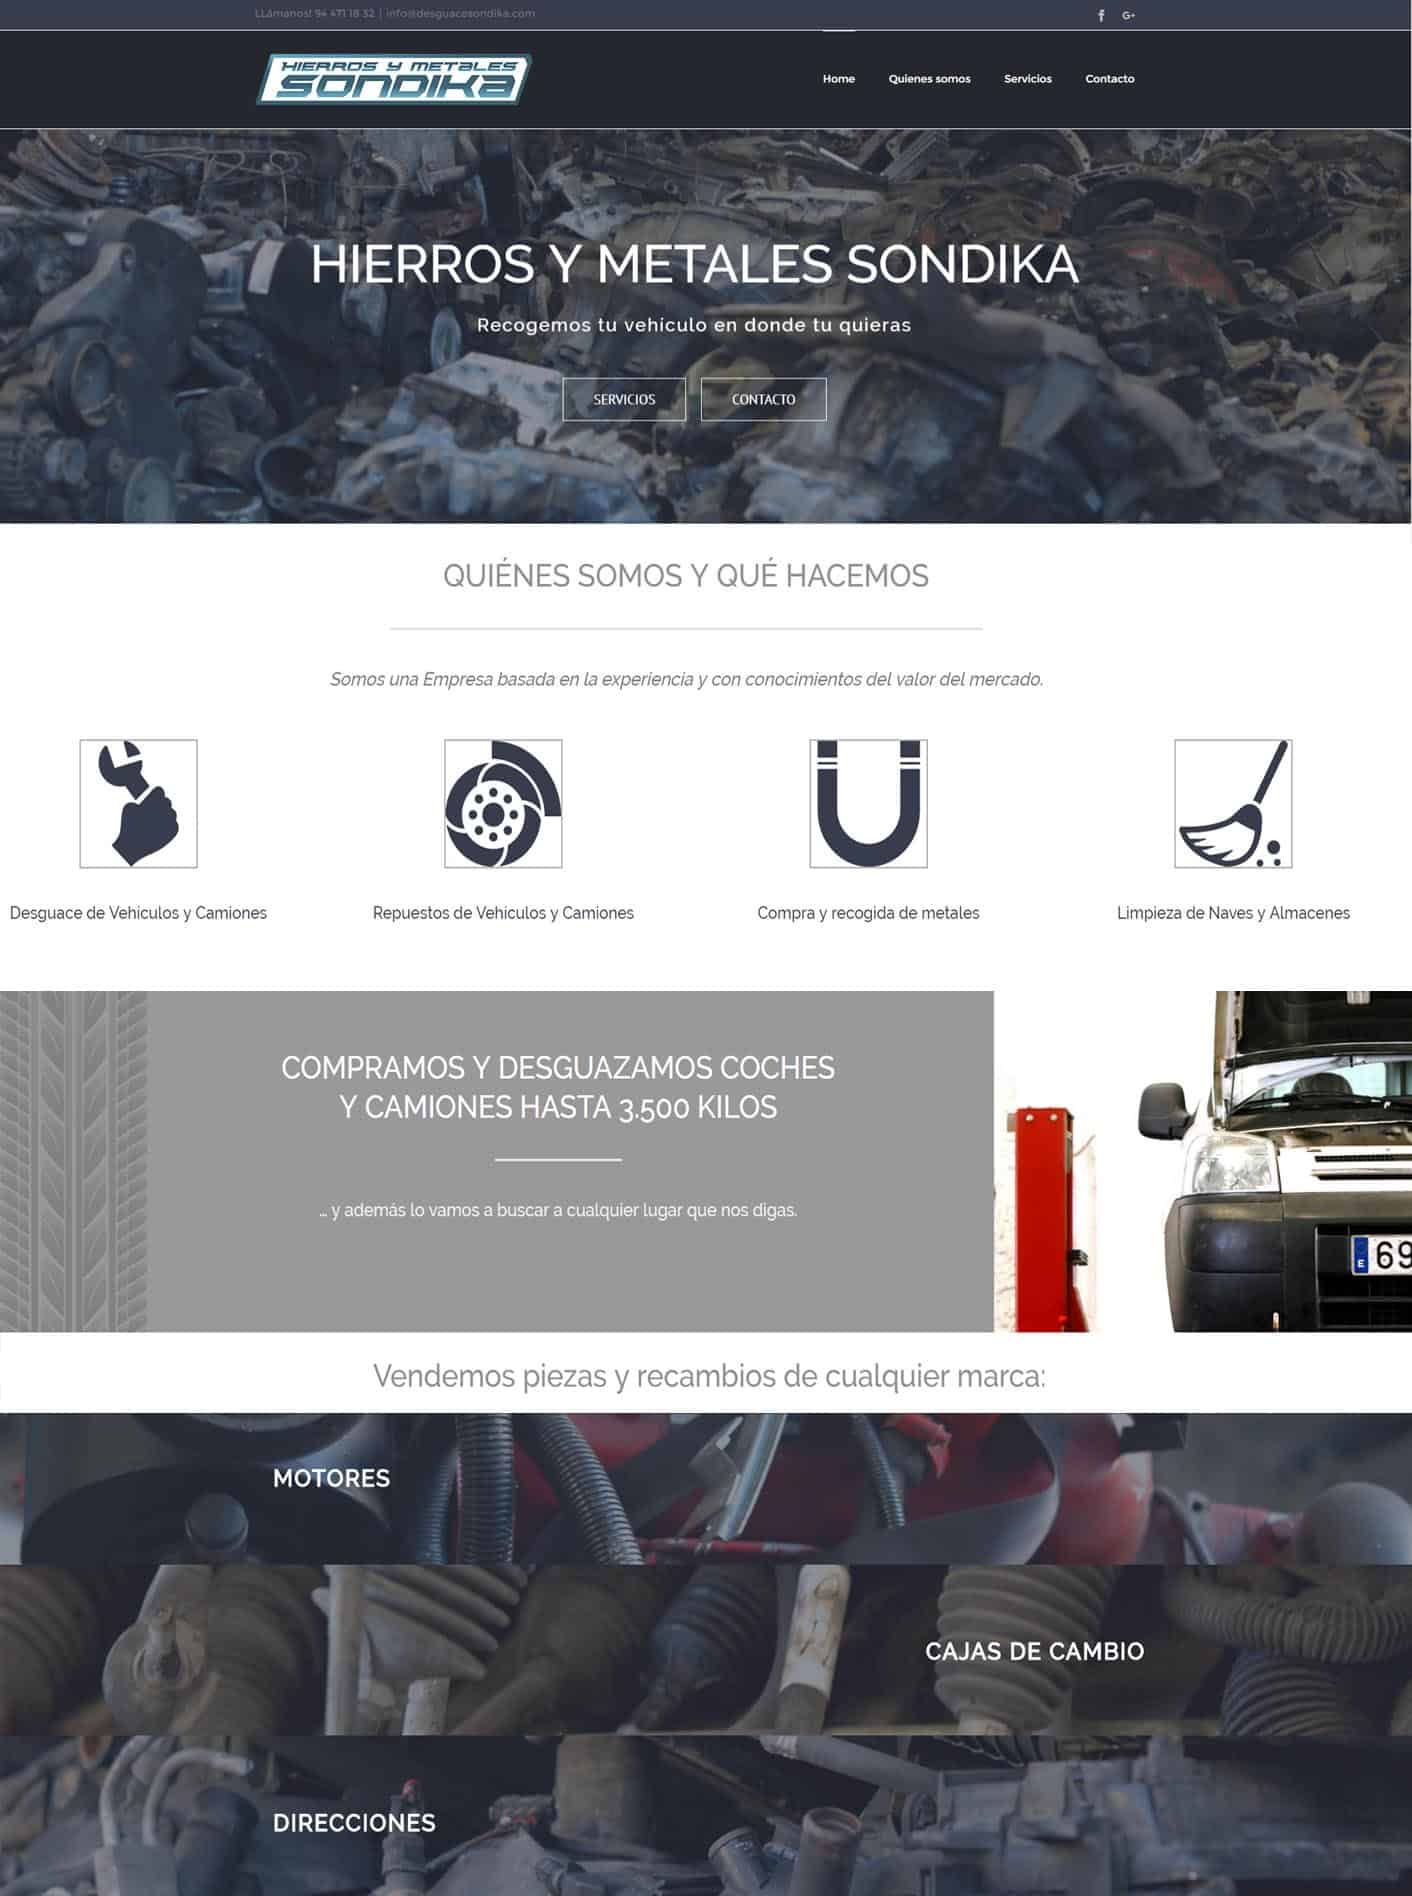 Desguace Sondika: Hierros y Metales